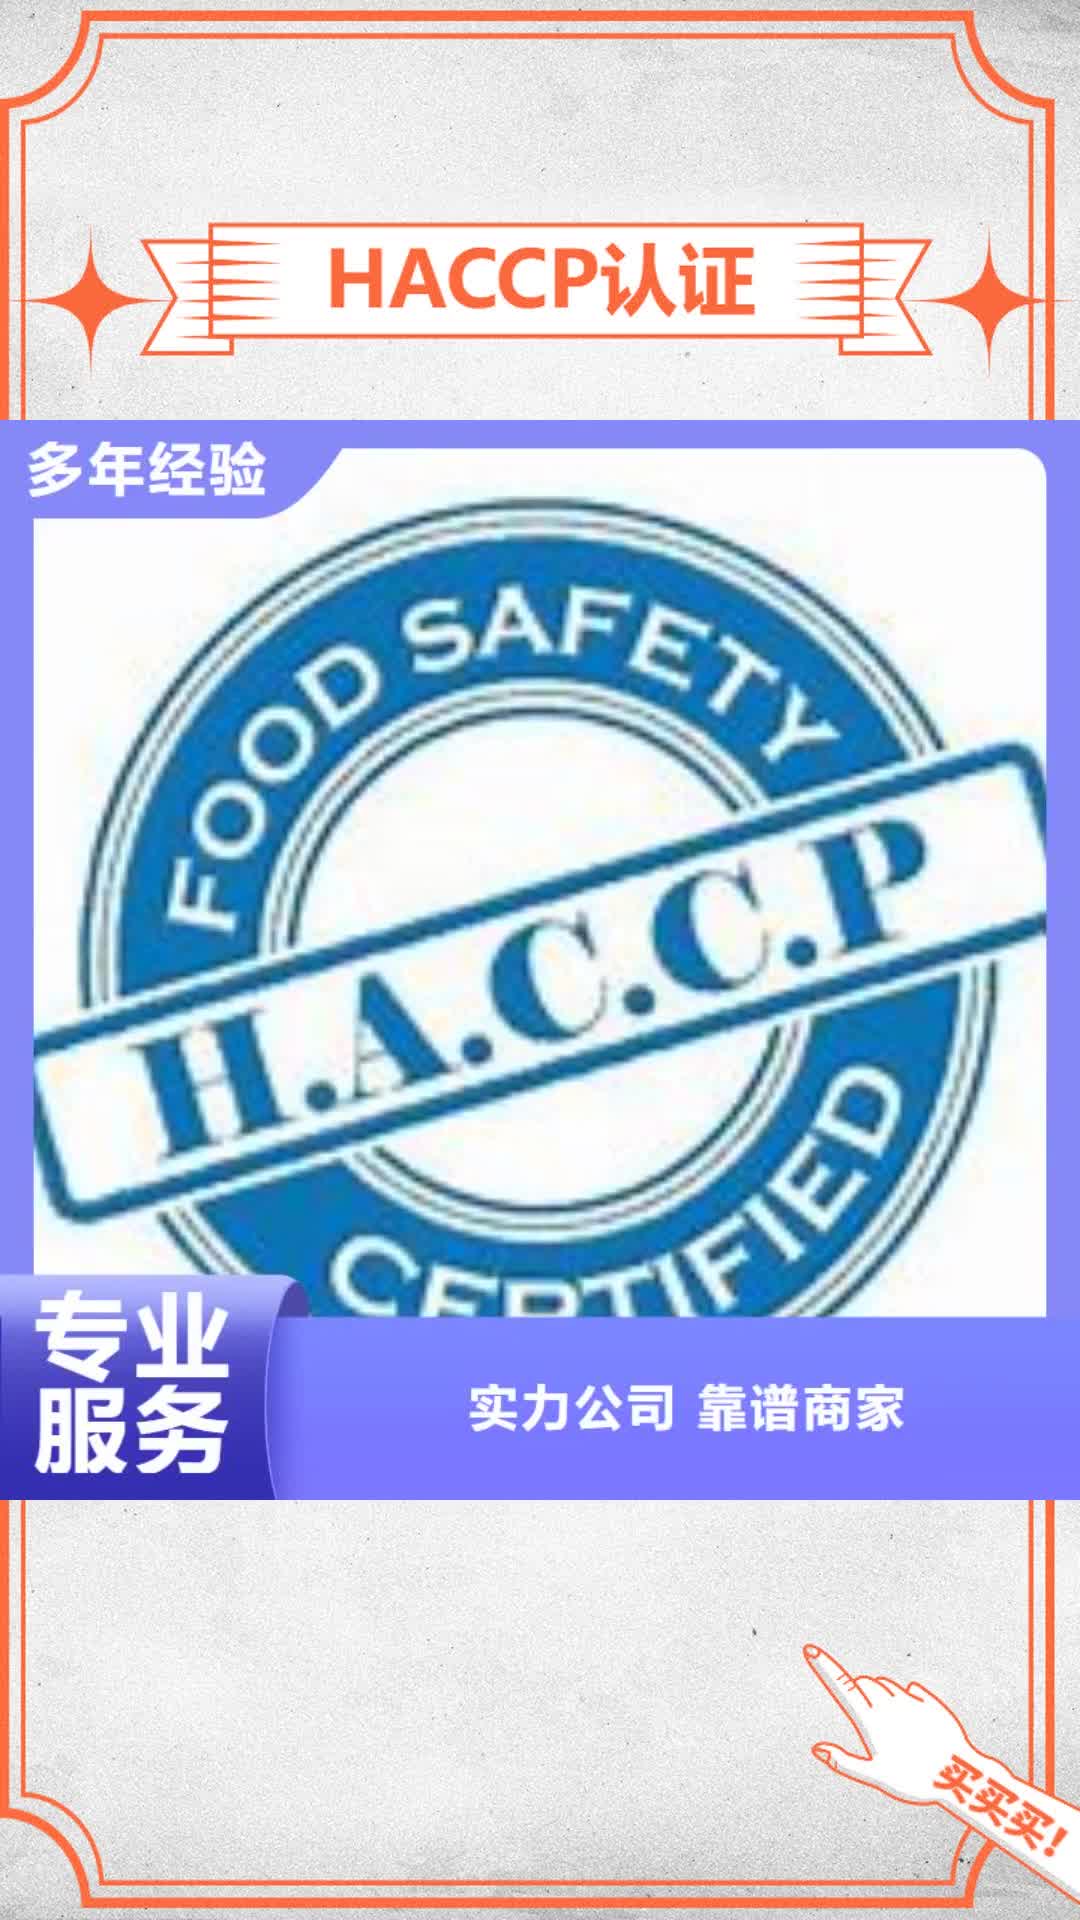 【潍坊 HACCP认证 ISO14000\ESD防静电认证行业口碑好】